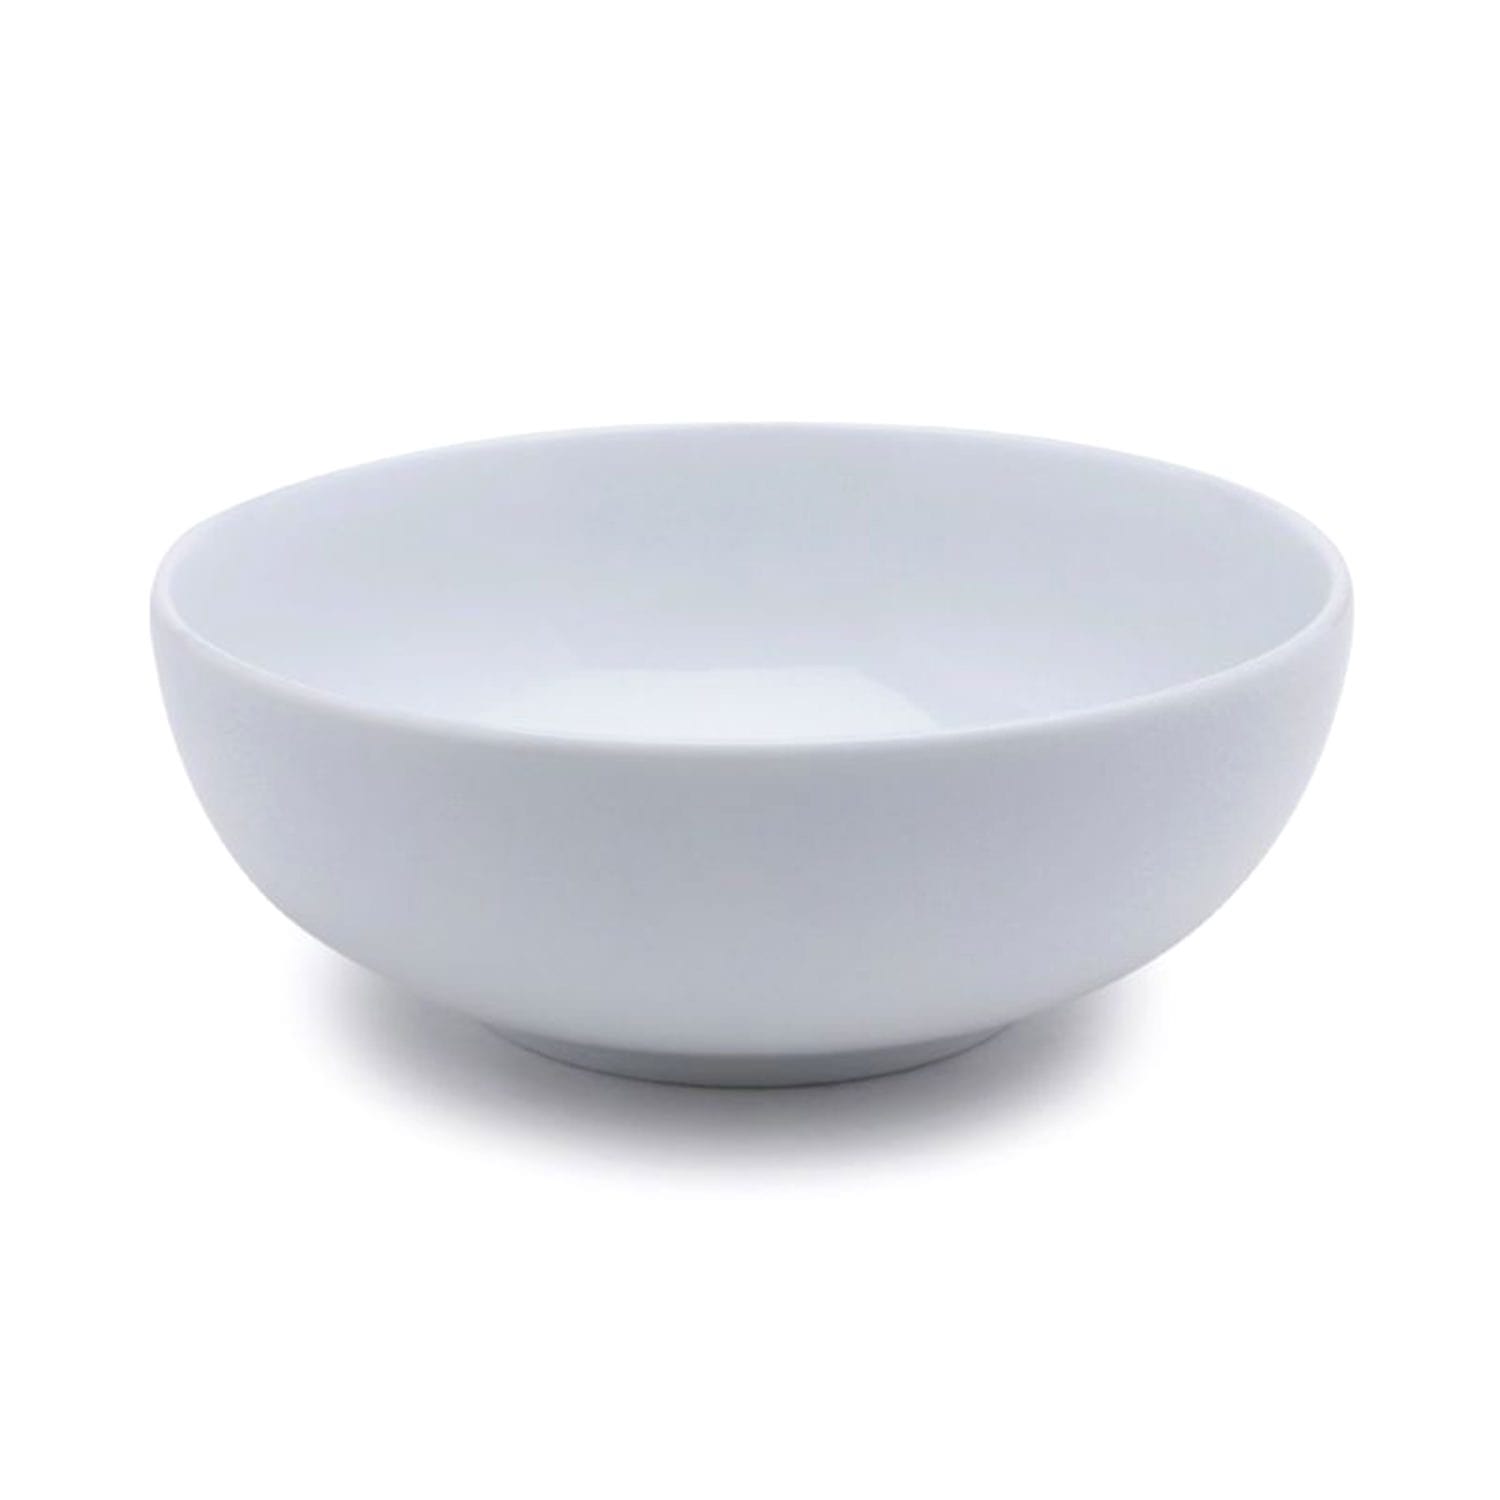 دانكوتوا – وعاء أرز نقاء – أبيض، 801 مل - 3650 - جاشنمال هوم